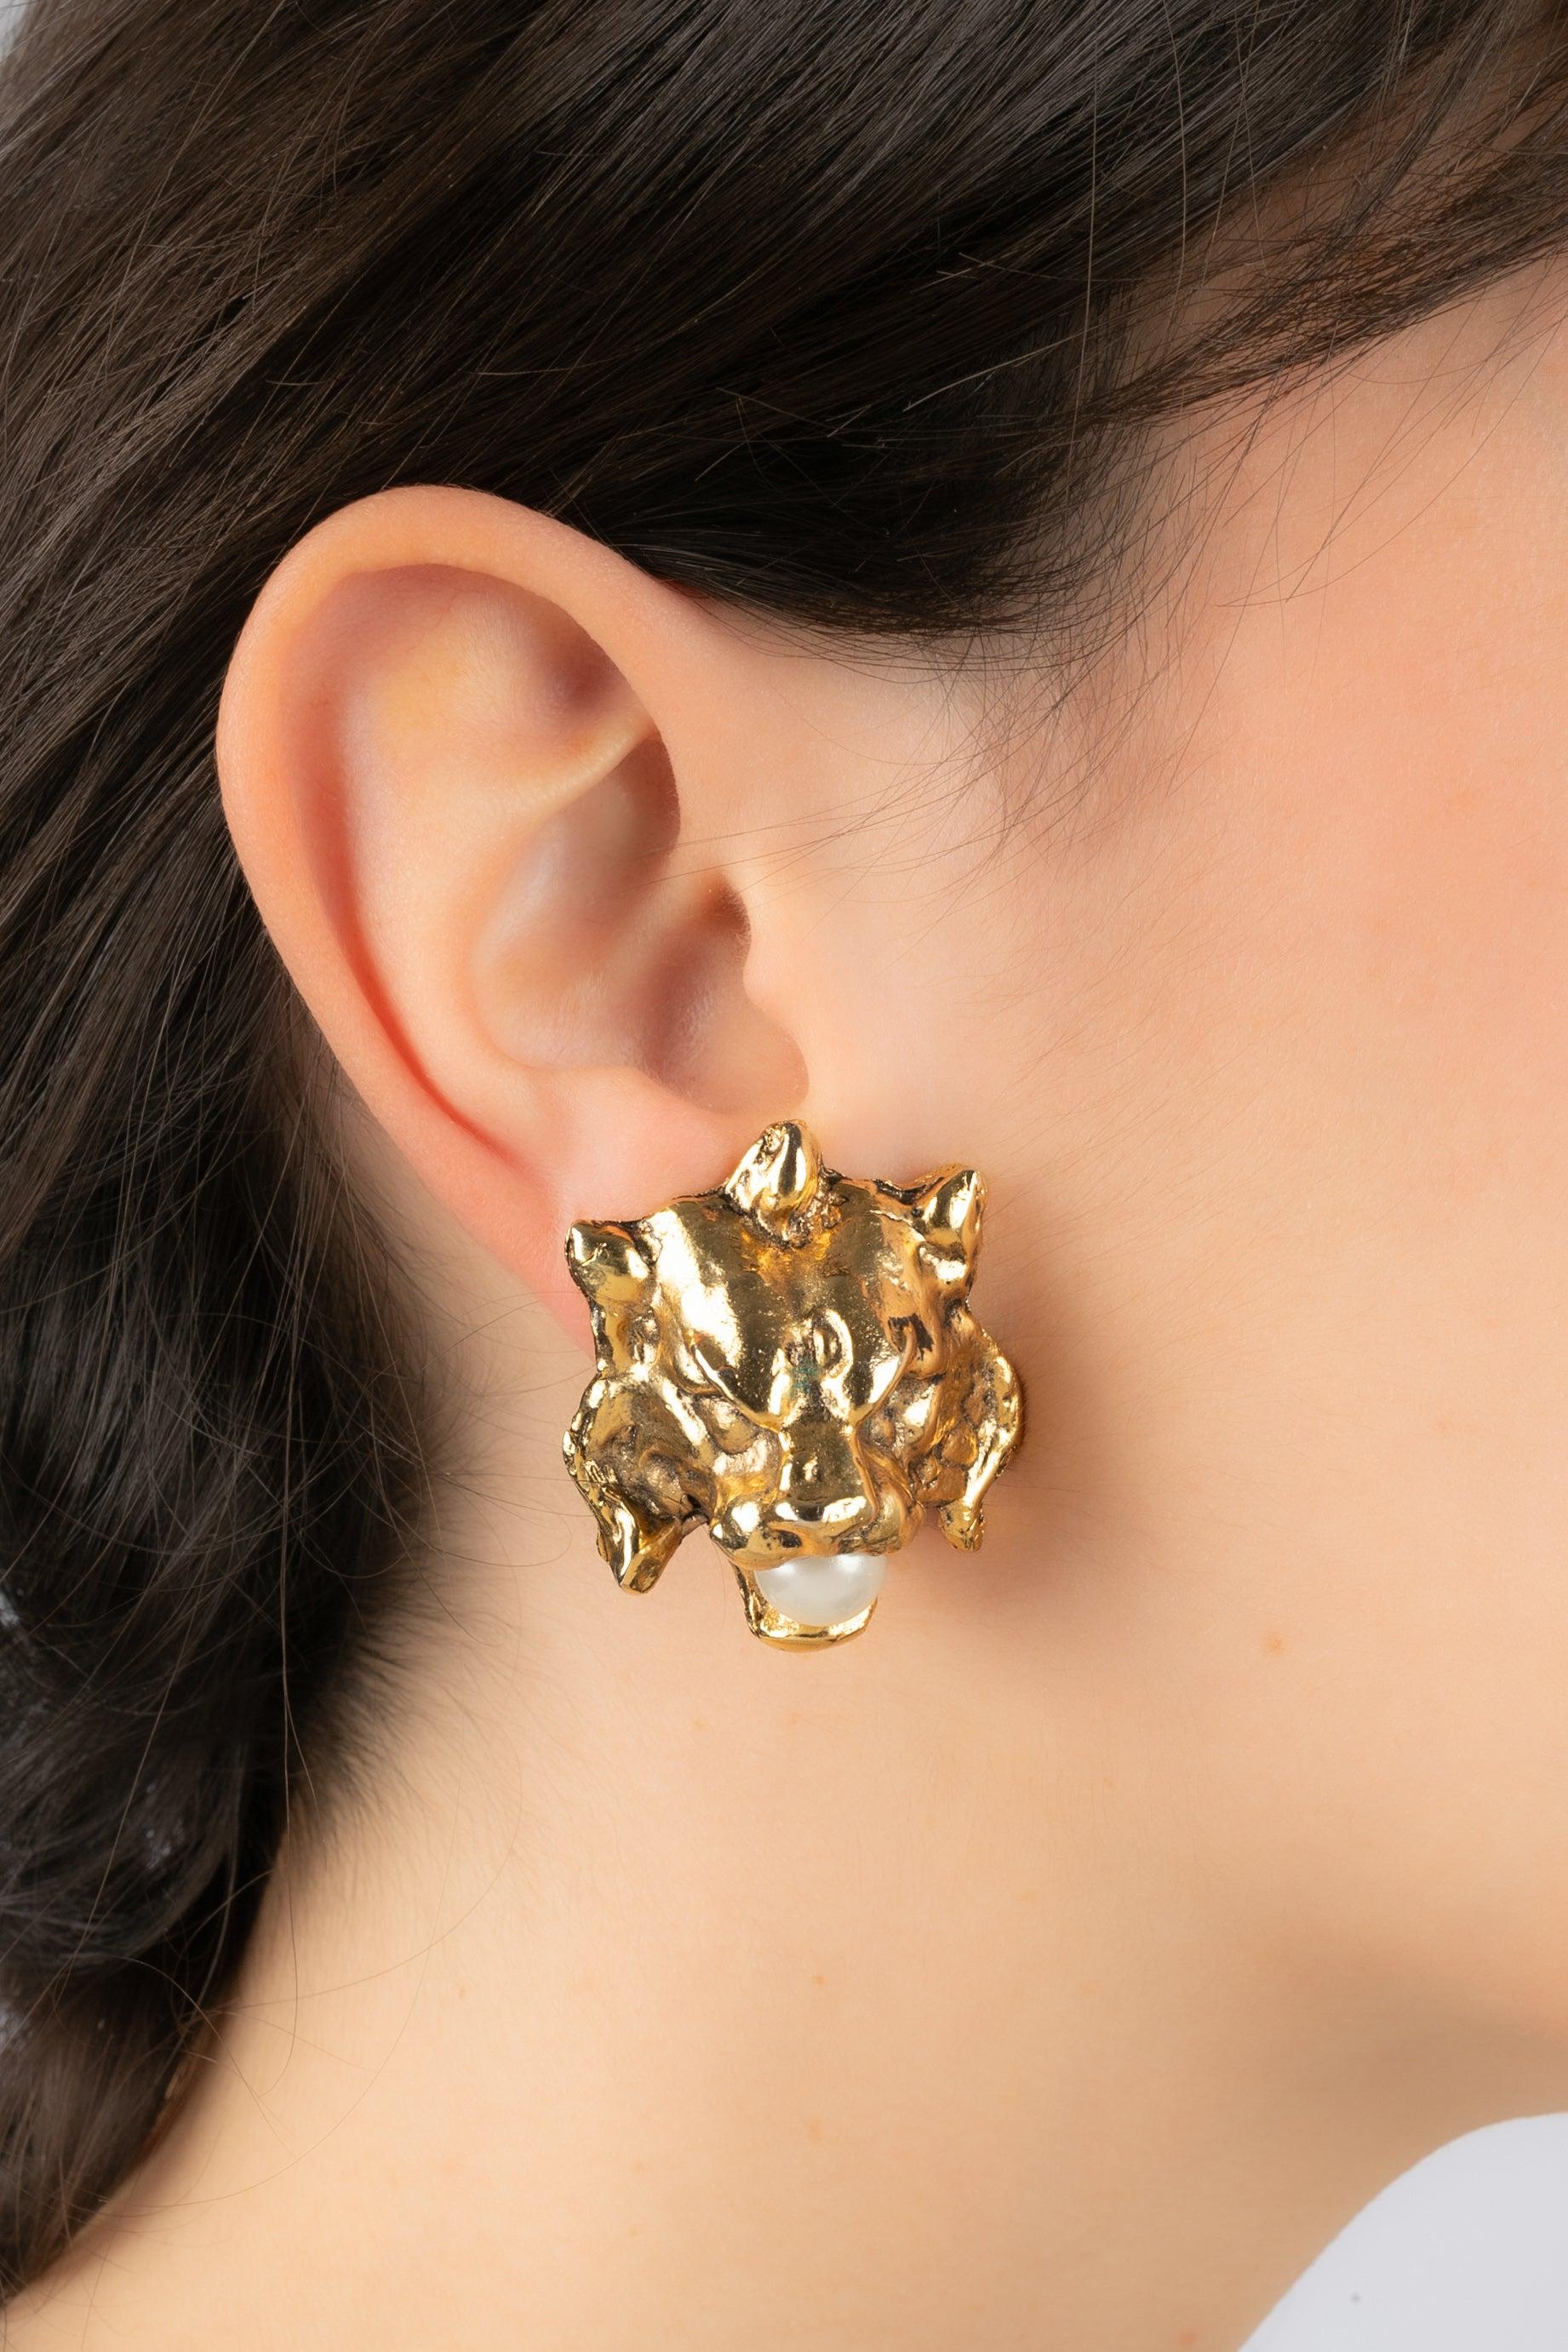 Inconnu - Boucles d'oreilles à clip en métal doré représentant une tête de lion avec une perle fantaisie dans la bouche.

Informations complémentaires :
Condit : Très bon état.
Dimensions : 3,5 cm x 2,5 cm

Référence du vendeur : BO21
